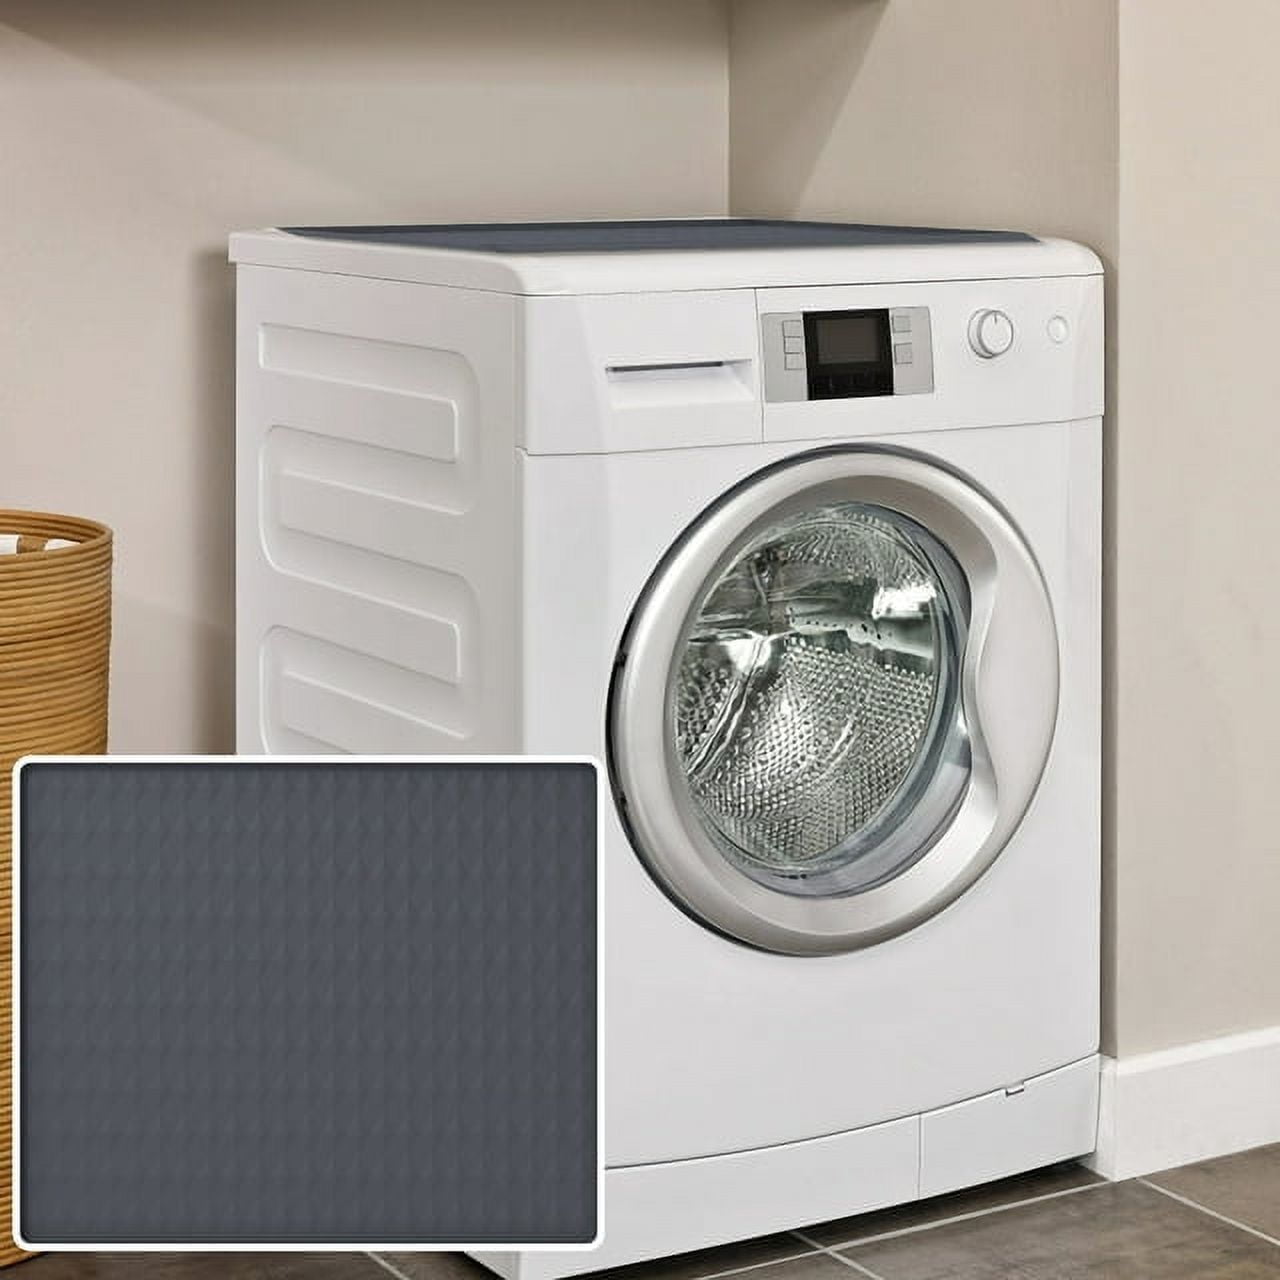 Cobertor Para Lavadora Funda Protector Cover For Washing Machine o Dryer  Cover